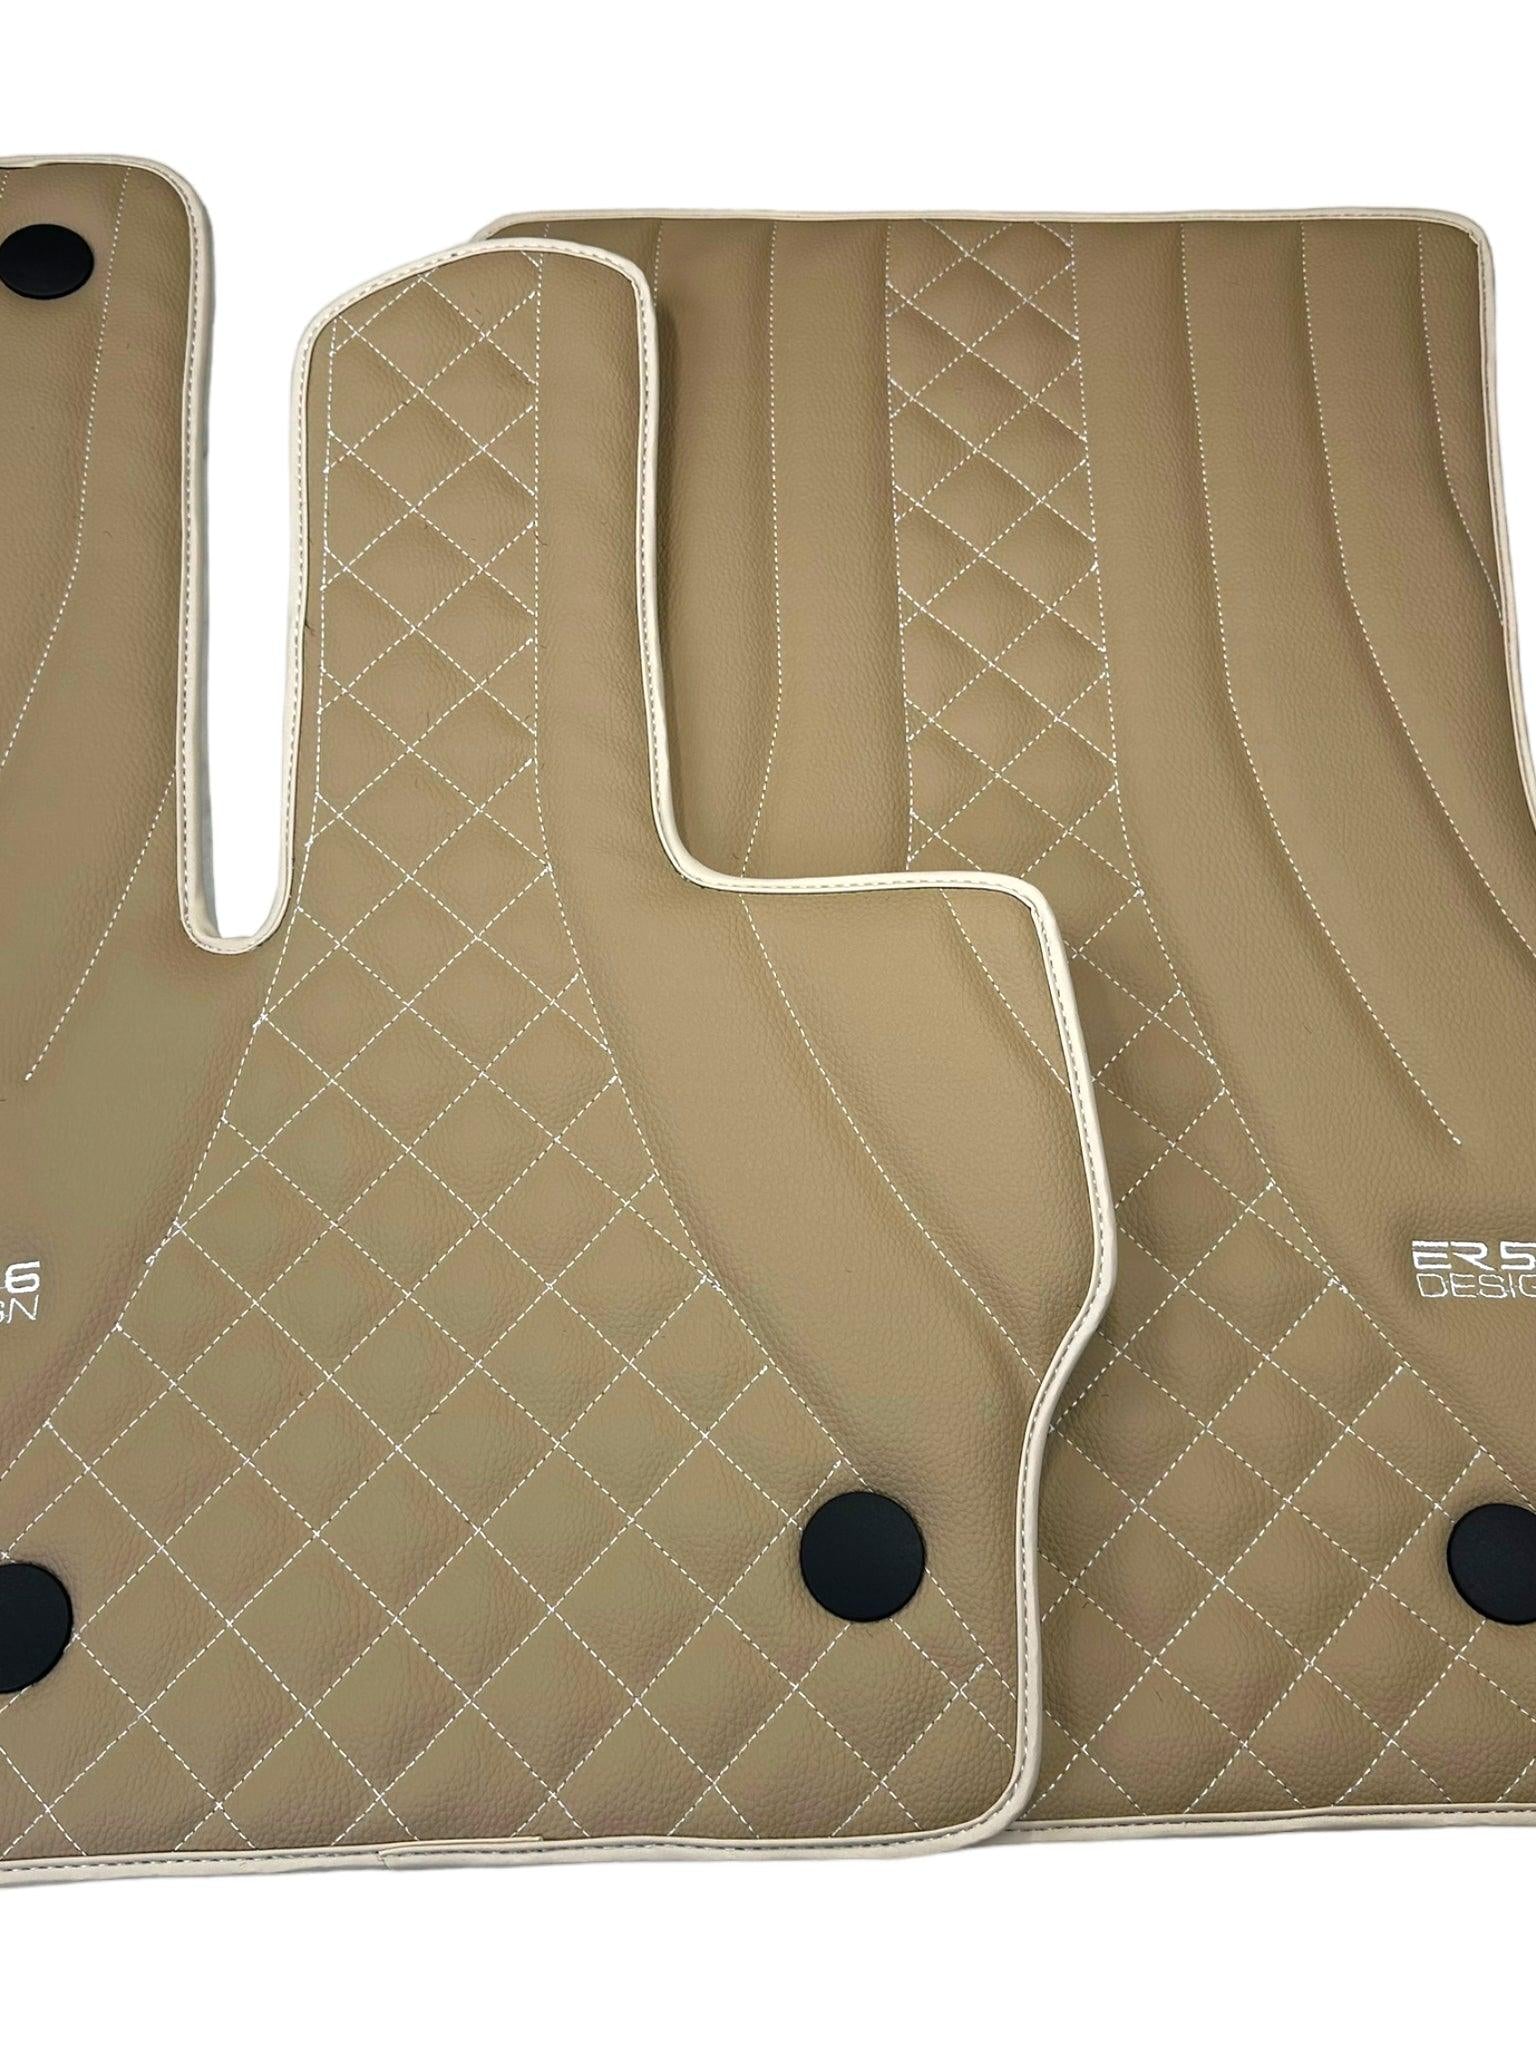 Beige Leather Floor Mats for Mercedes-Benz G Class W461 (1979-2008) ER56 Design